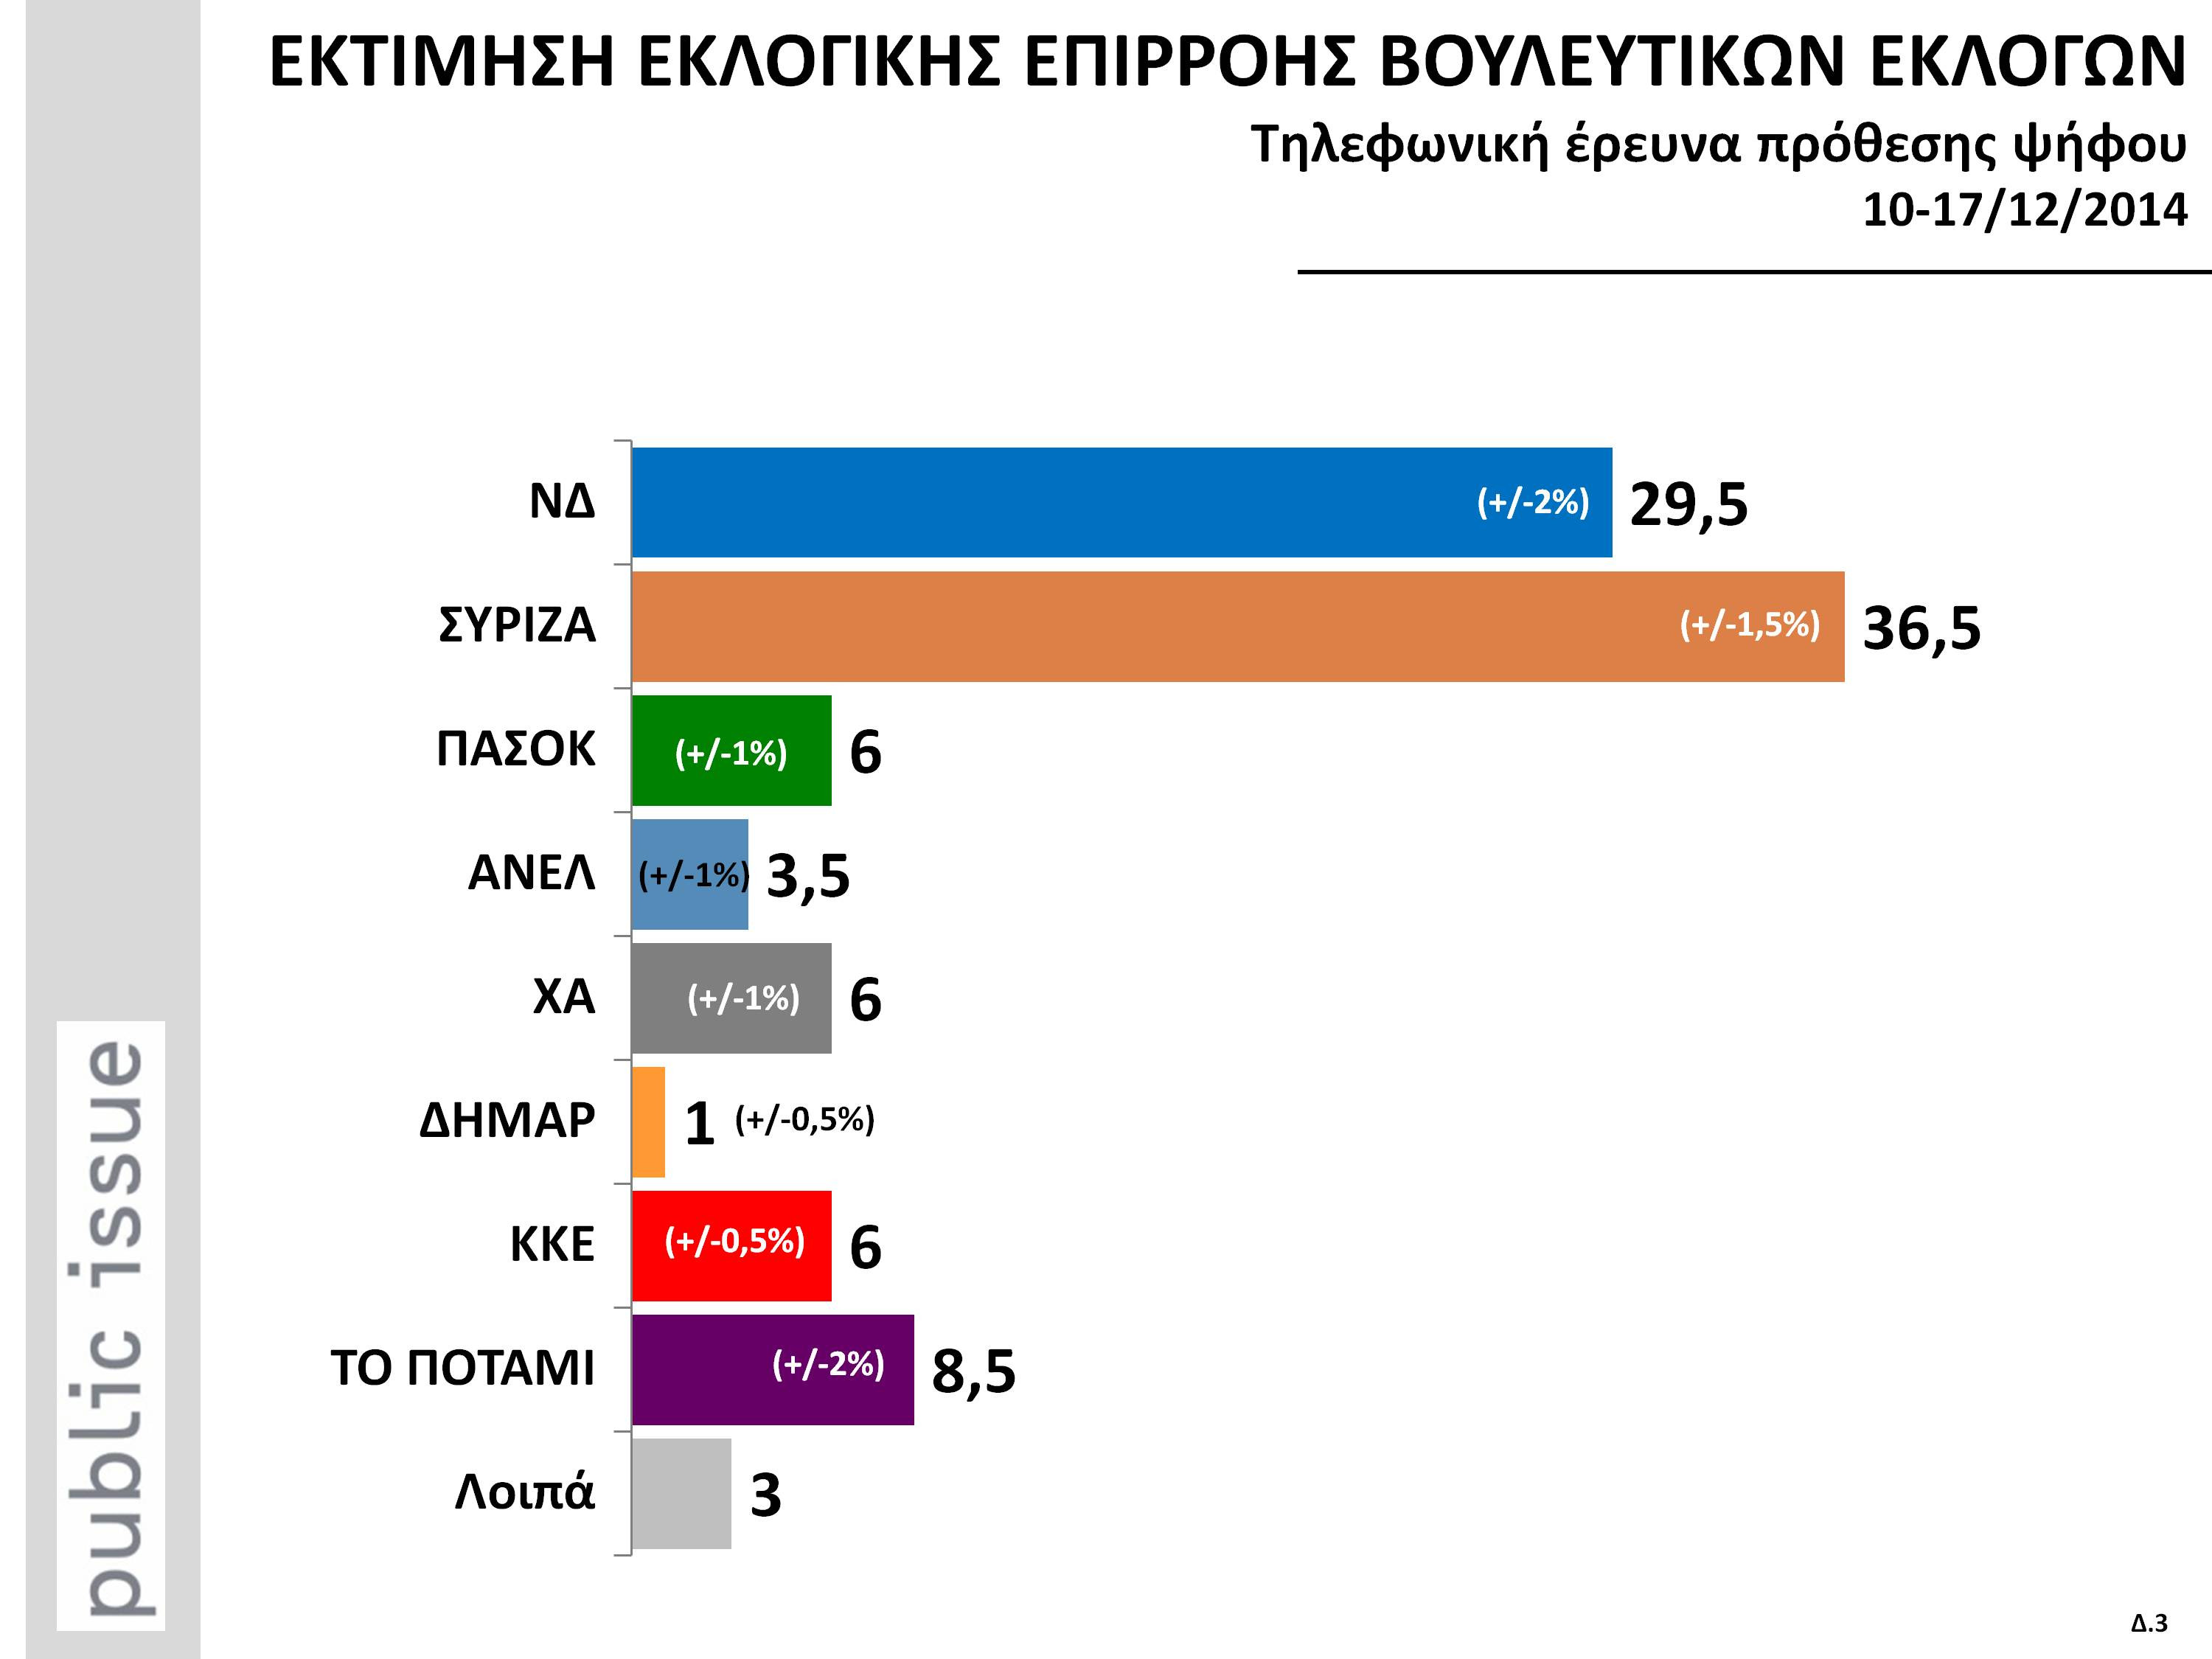 Επτά μονάδες μπροστά ο ΣΥΡΙΖΑ σε νέα δημοσκόπηση